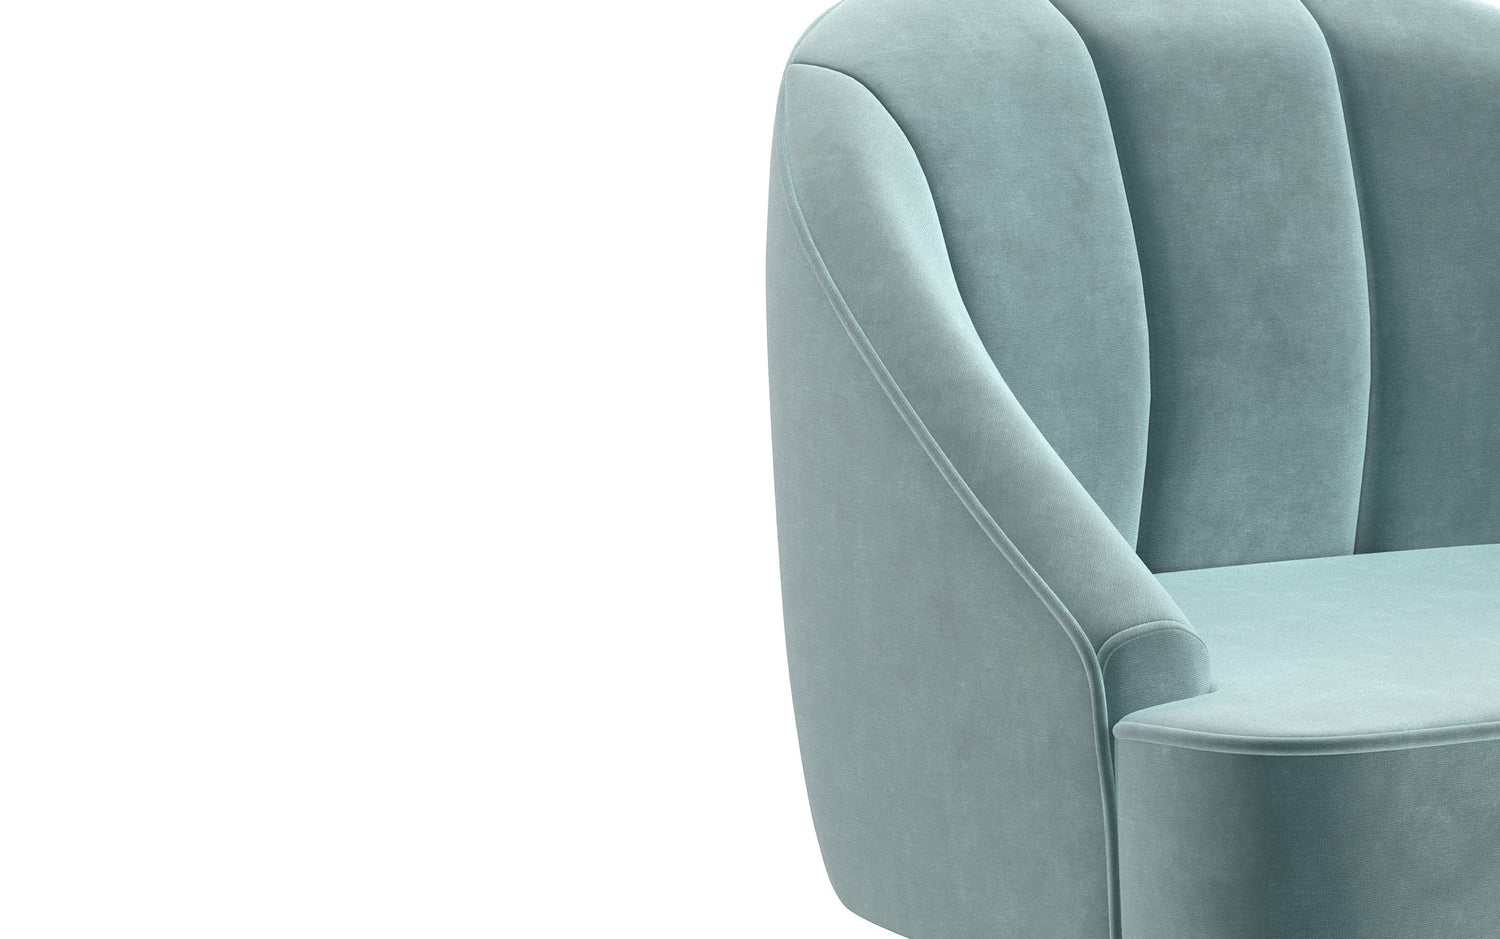 Seafoam Blue | Harrah Accent Chair